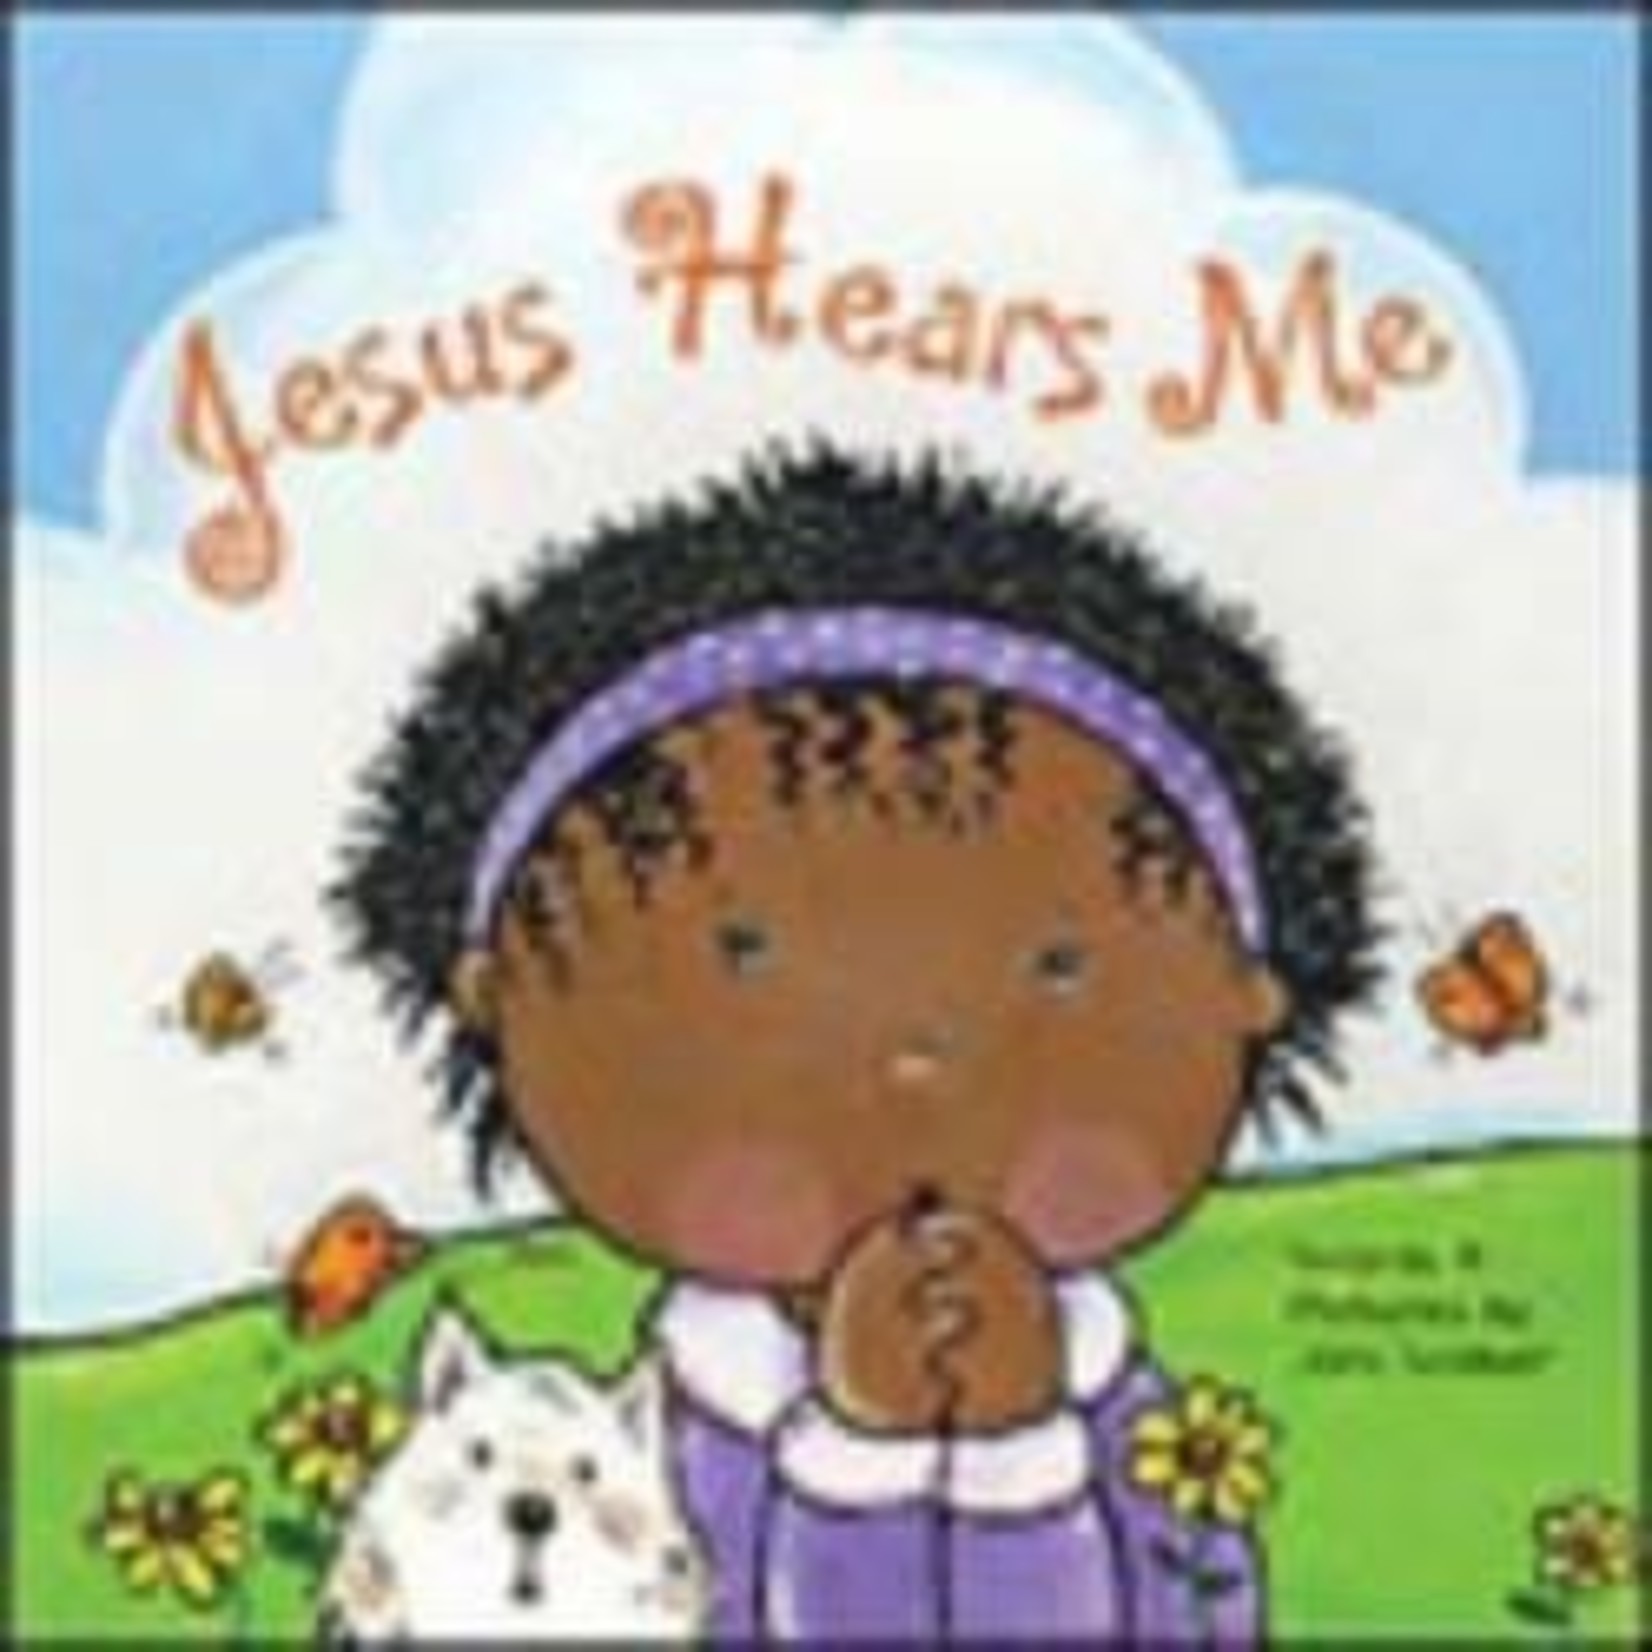 Jesus Hears Me (Board Book)